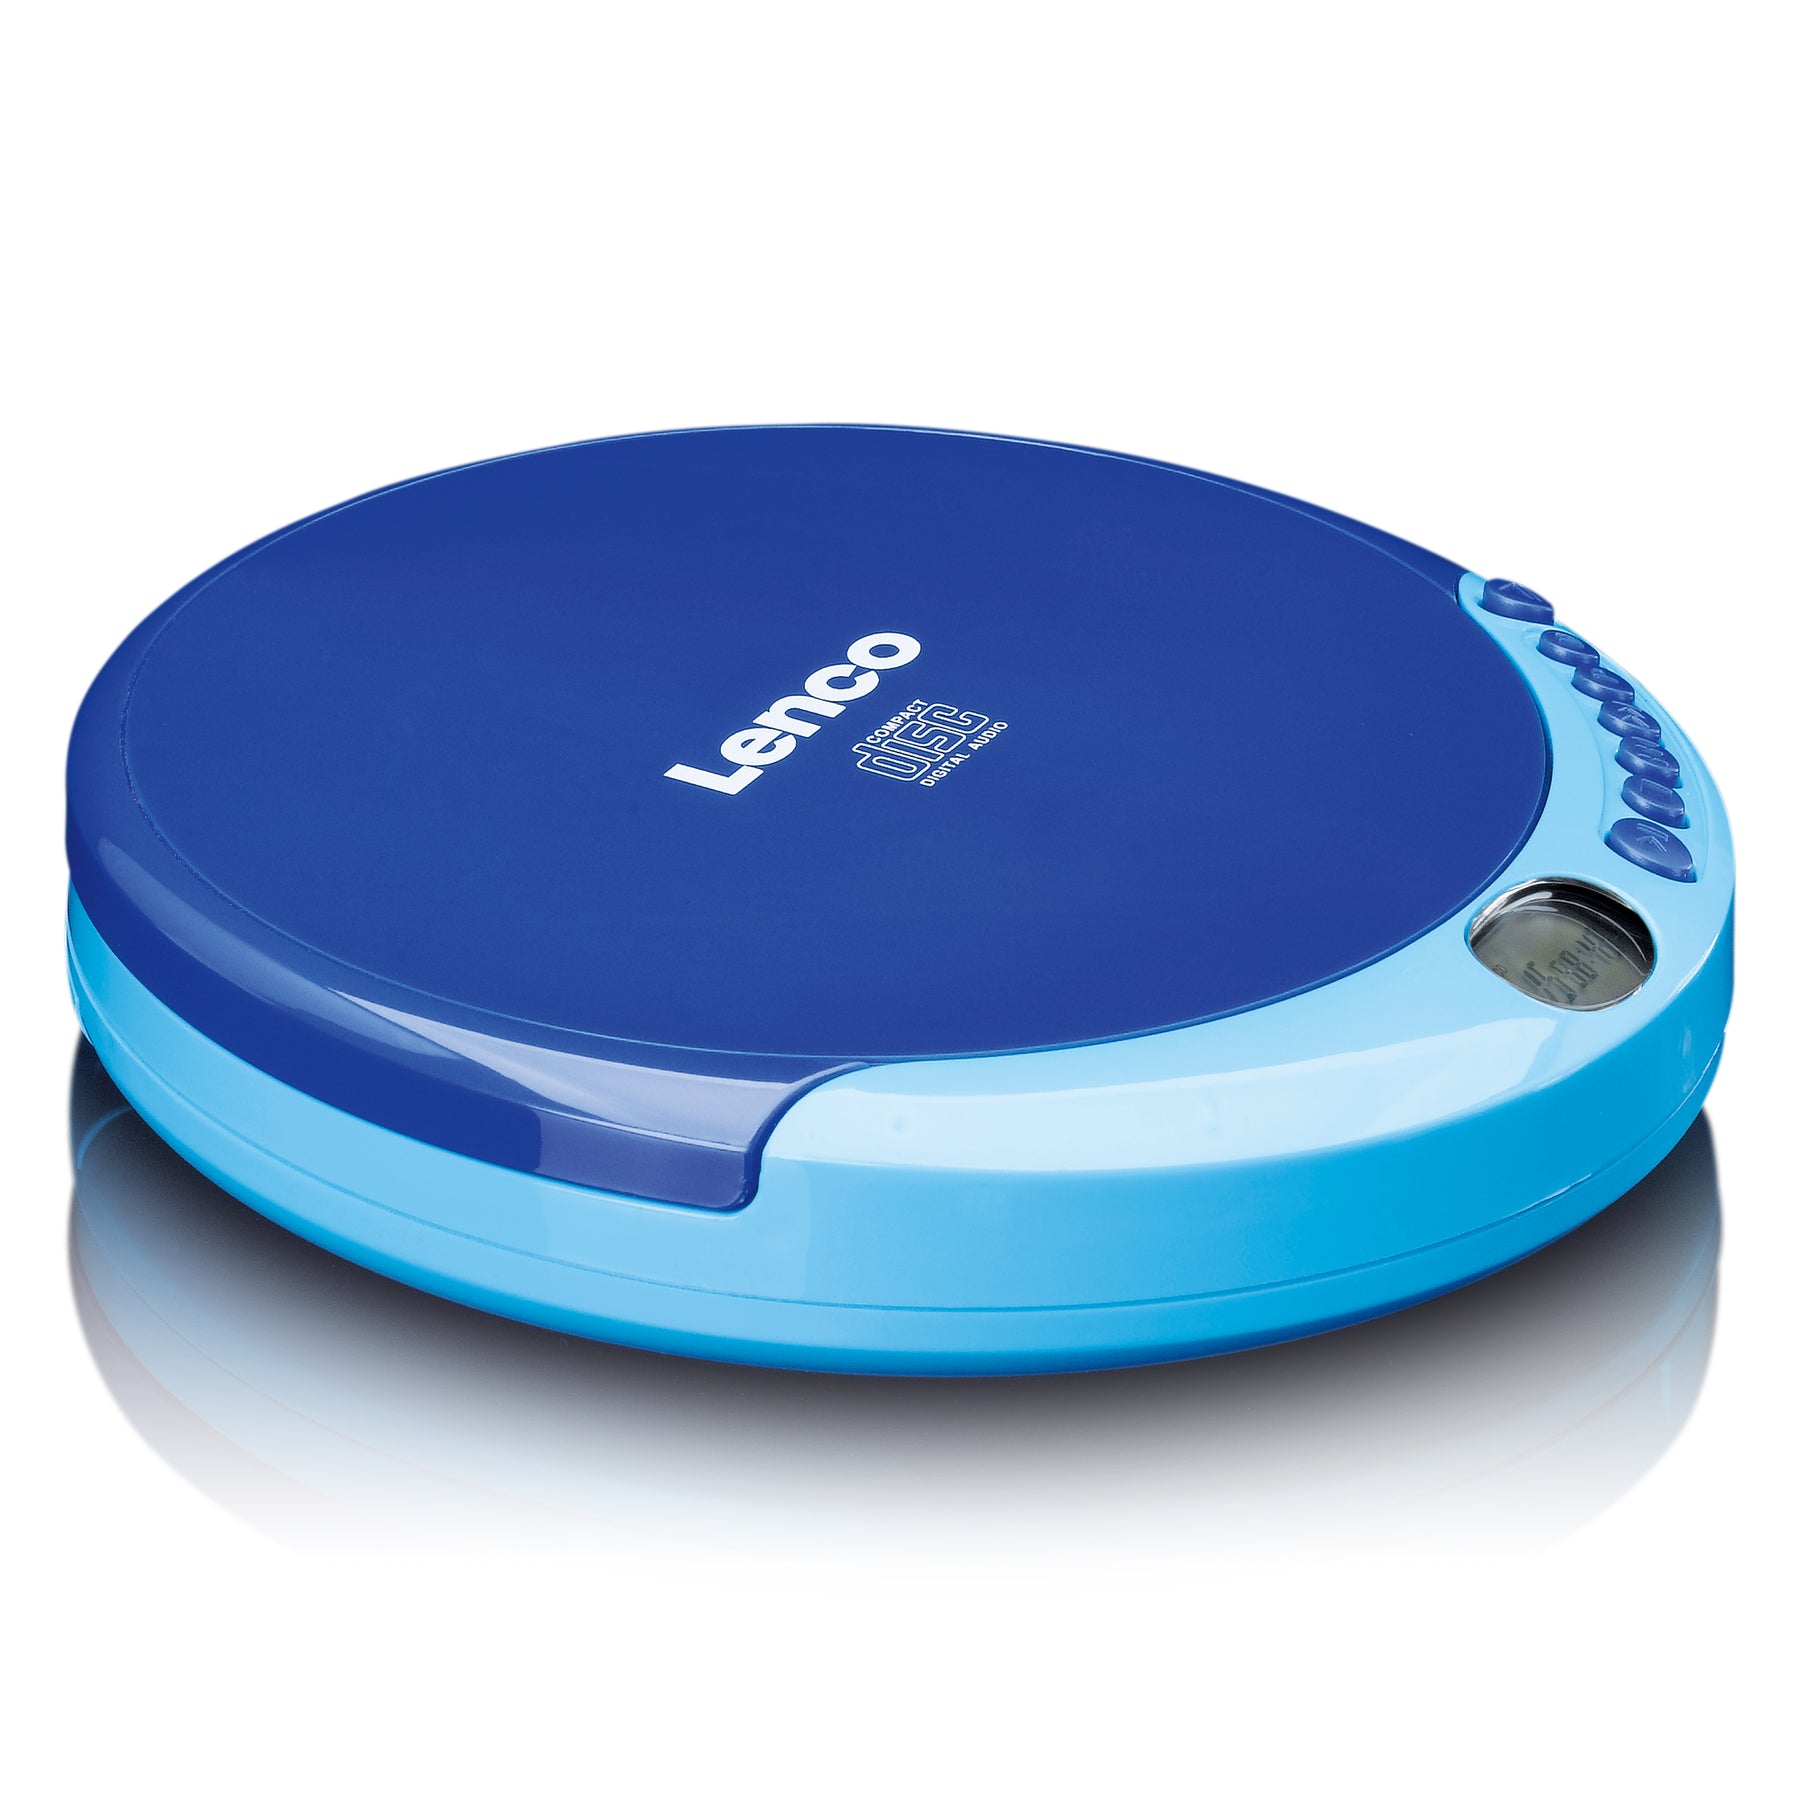 Blue LENCO Portable - CD Lenco-Catalog player – - CD-011BU